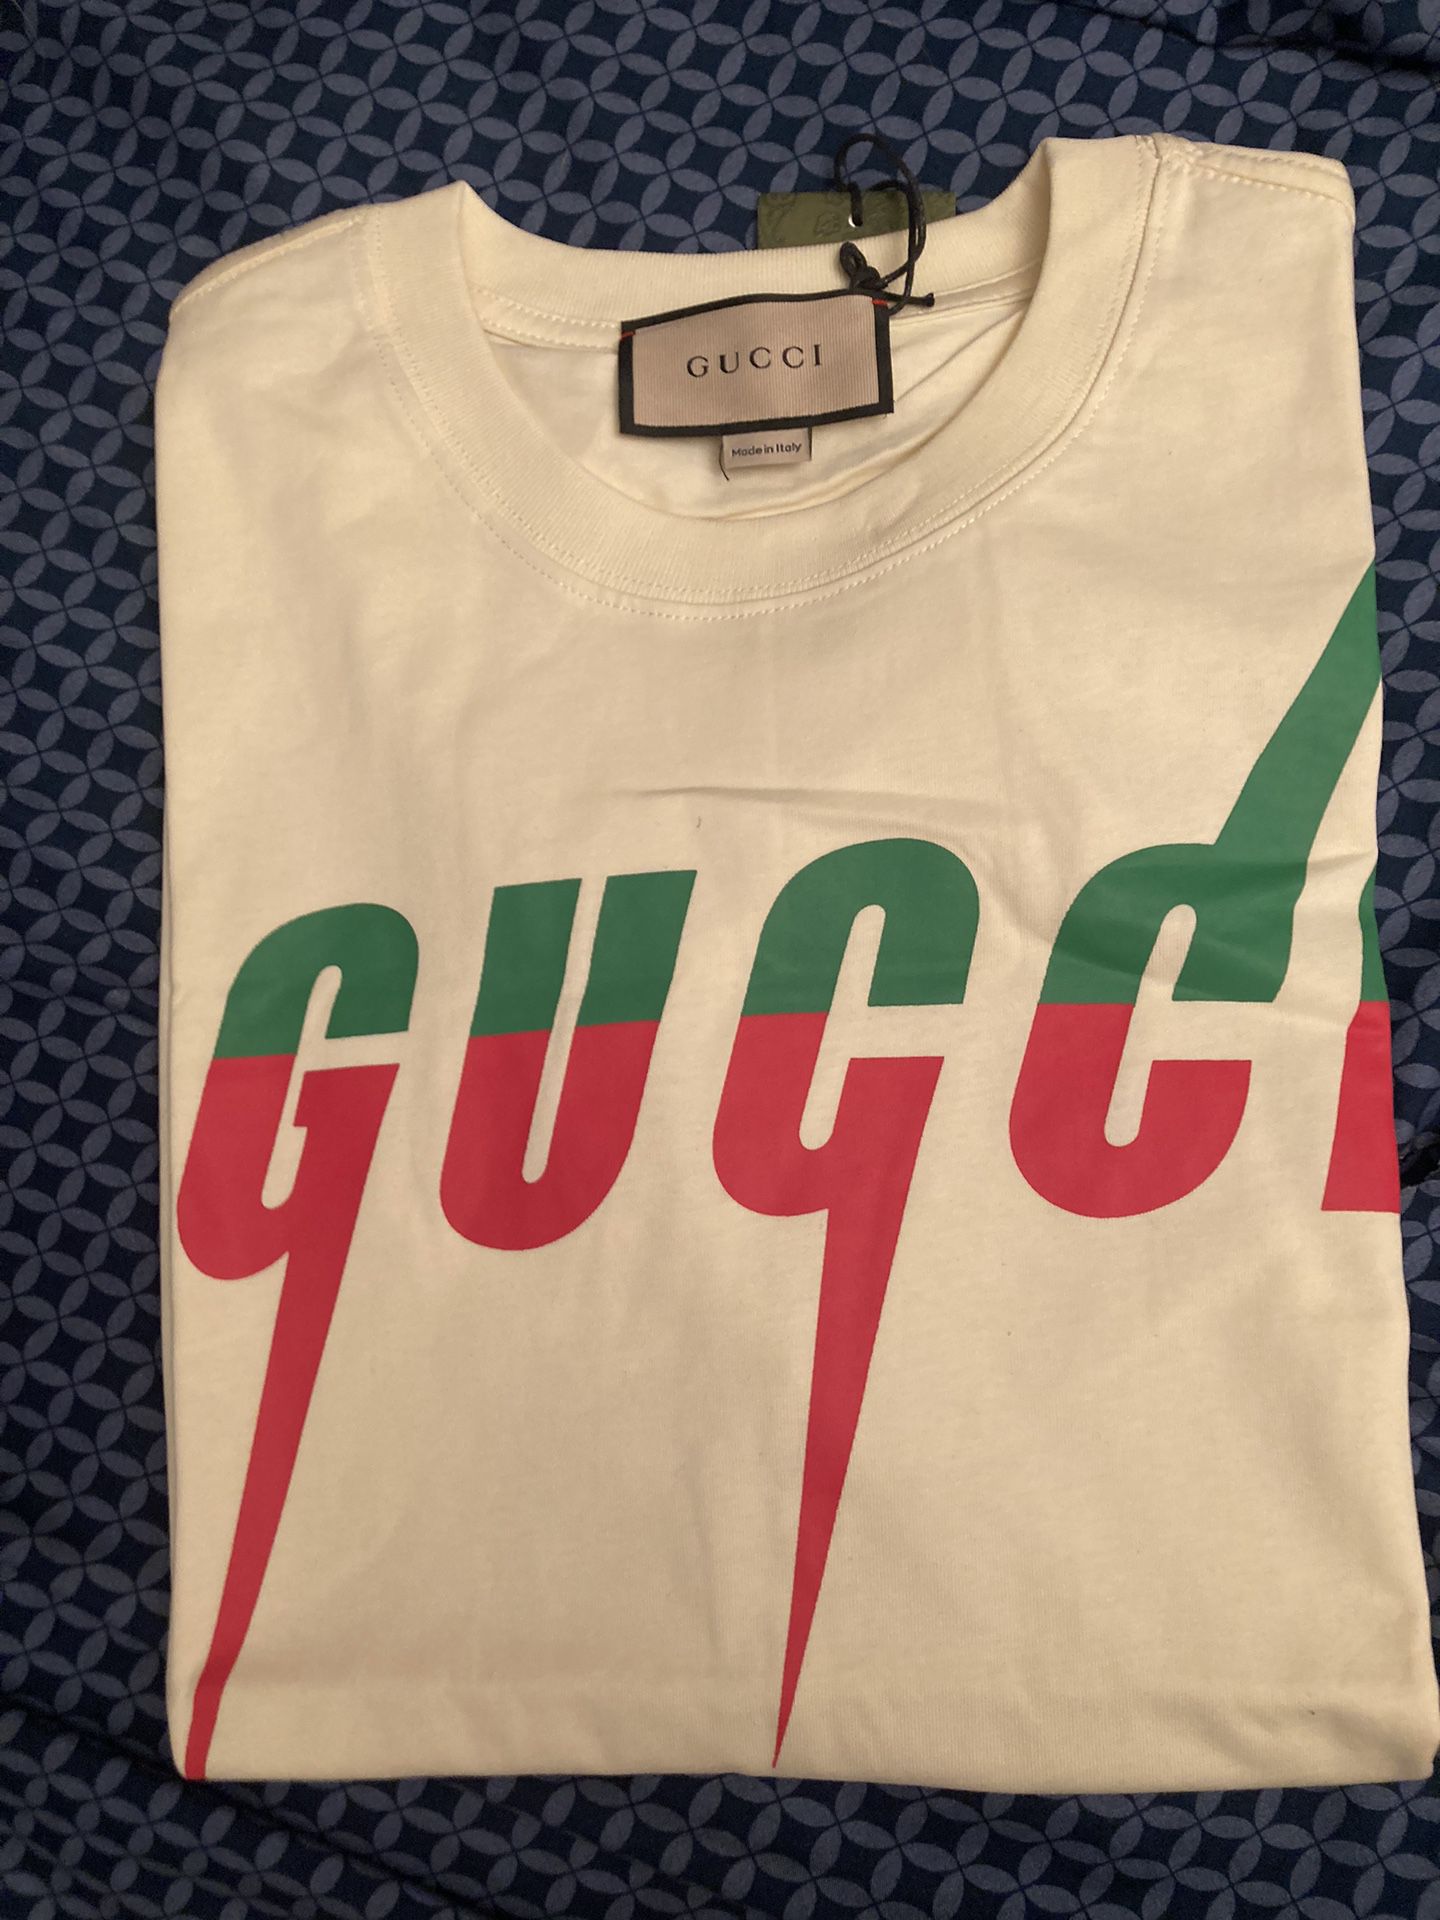 XL Gucci Shirt 